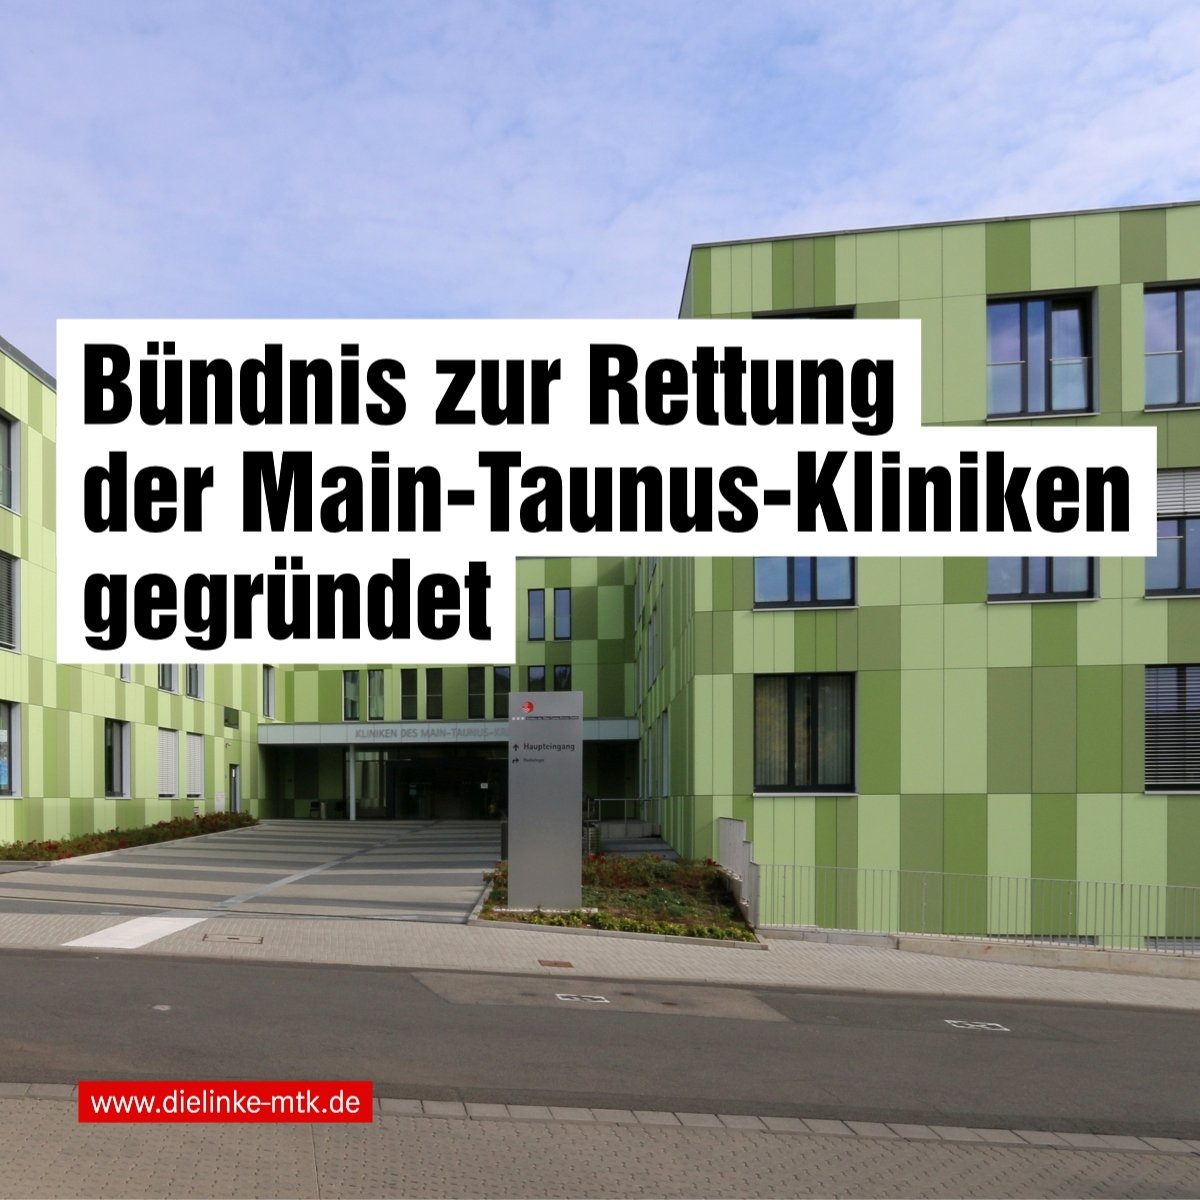 Das Bild zeigt die grüne Fassade der Hofheimer Klinik, ergänzt um den Schriftzug: Bündnis zur Rettung der Main-Taunus-Kliniken gegründet